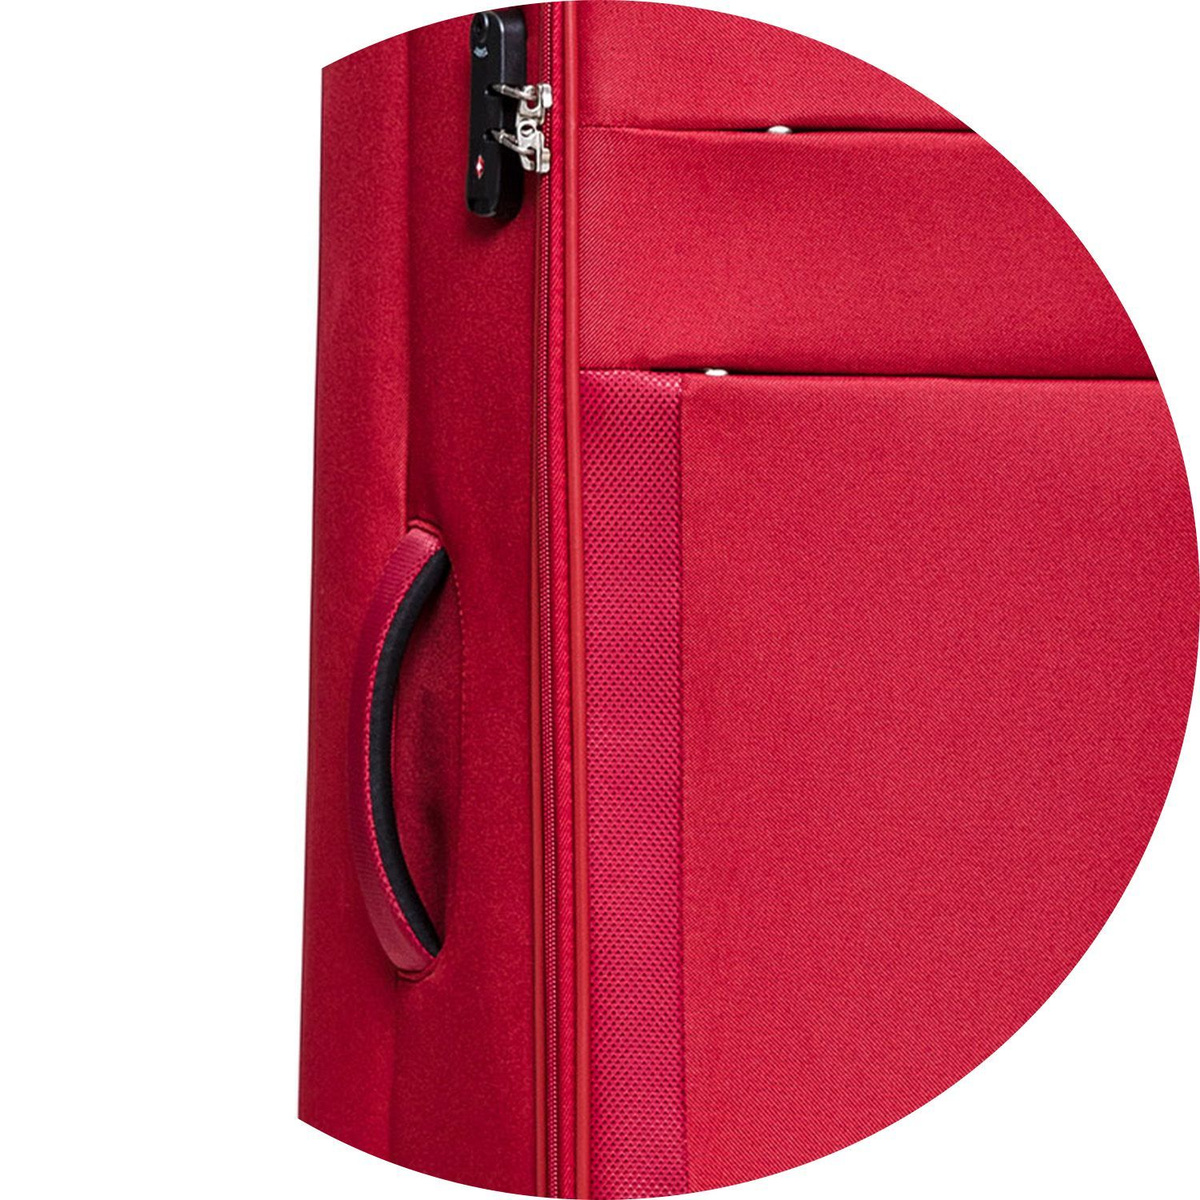 Для удобства транспортировки чемодан оснащён дополнительной боковой ручкой.